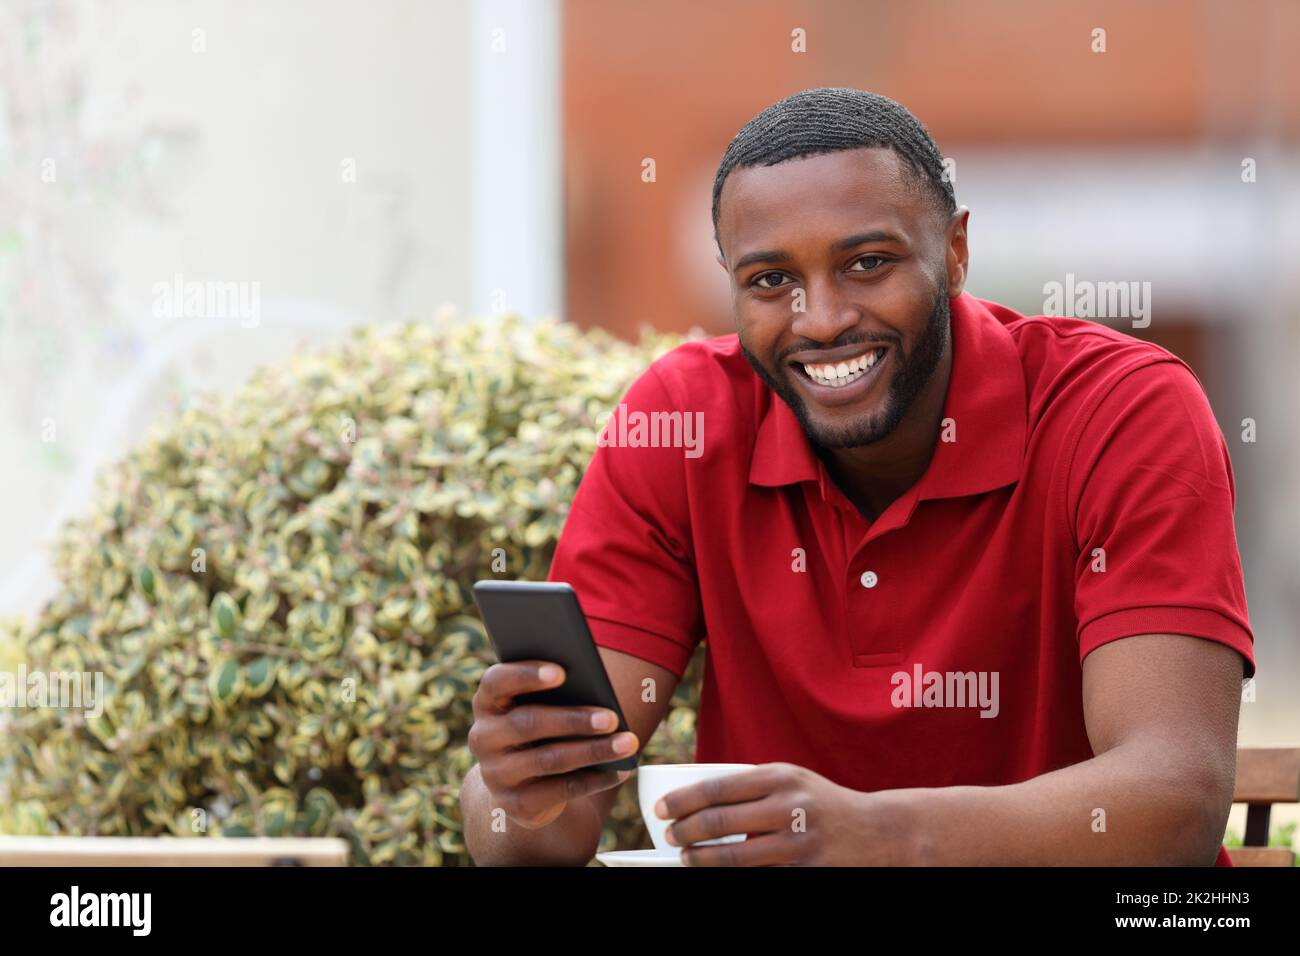 Un homme heureux avec une peau noire regarde l'appareil photo avec un téléphone Banque D'Images